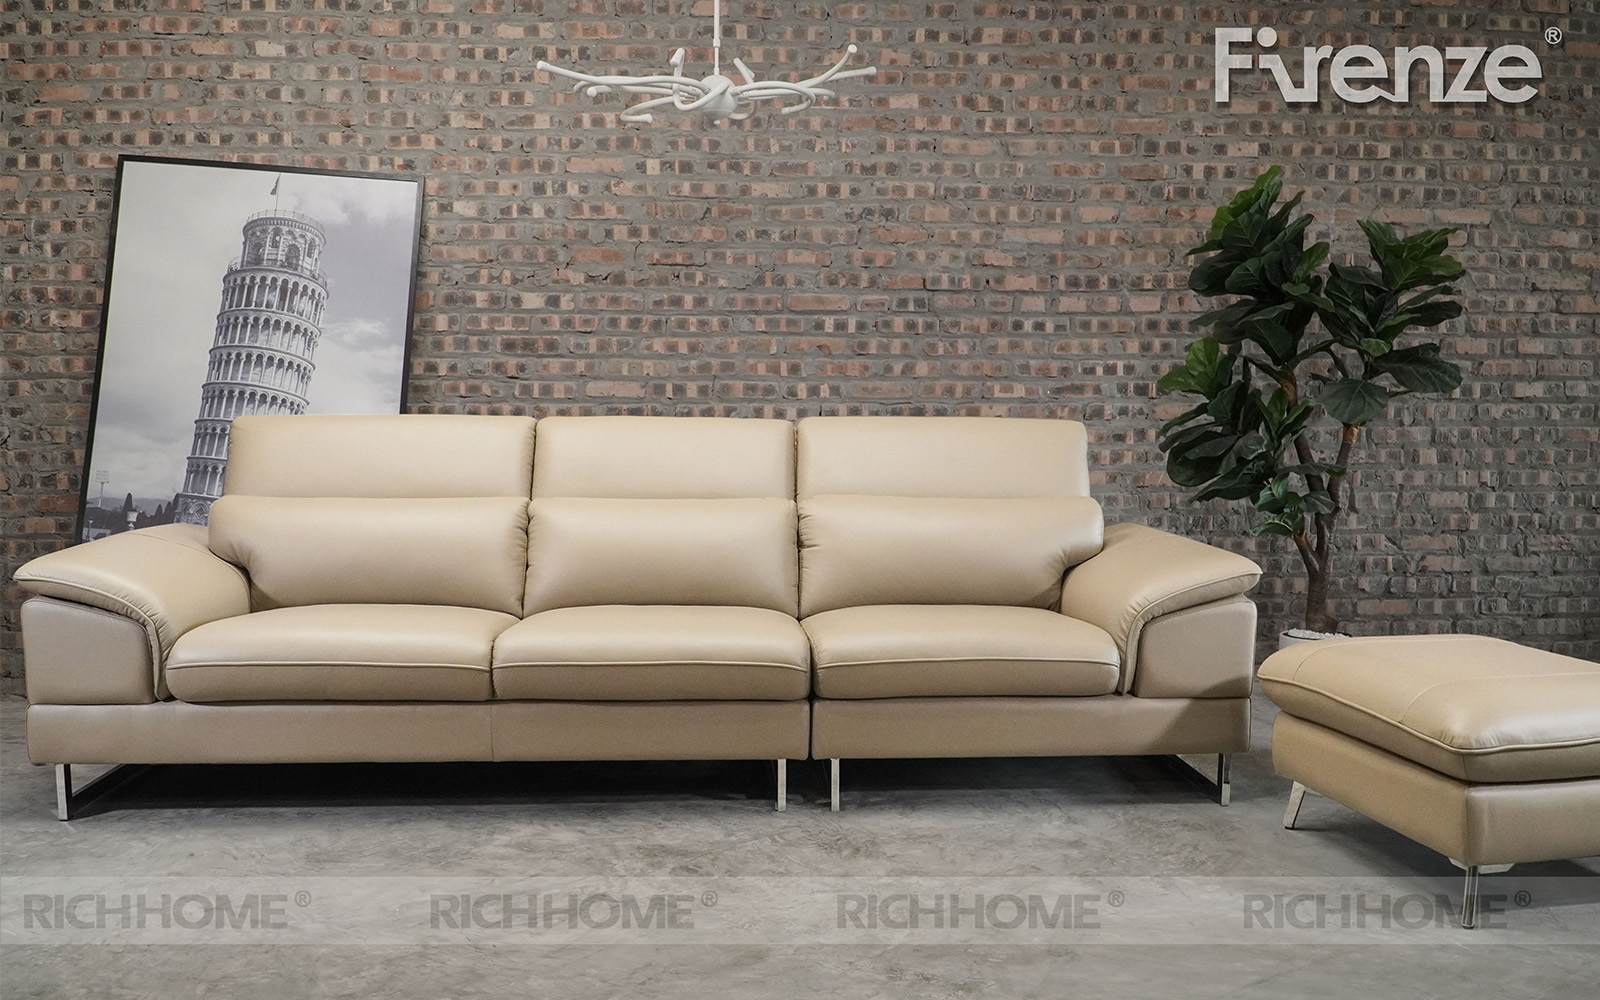 Nên mua ghế sofa mềm hay cứng để tối ưu trải nghiệm sử dụng - Ảnh 3